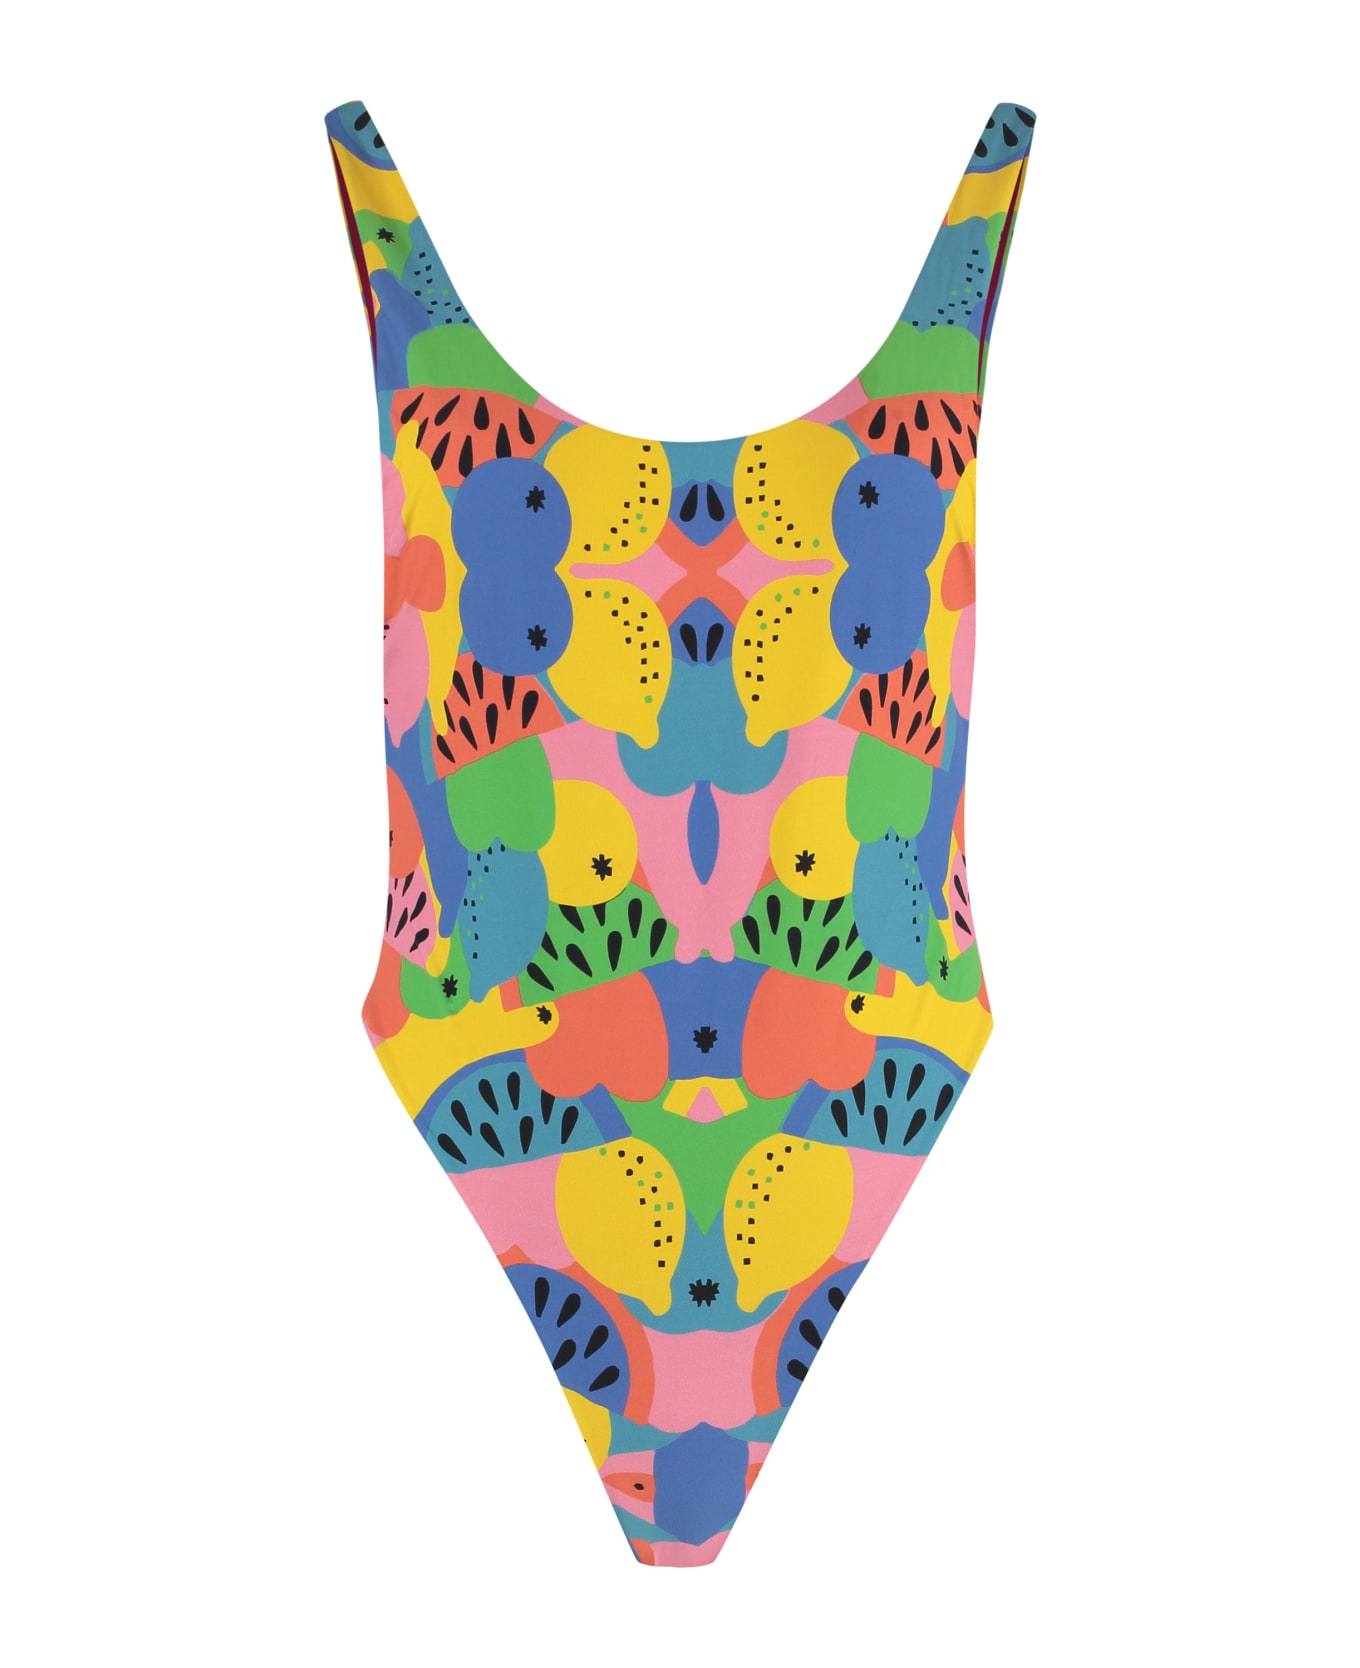 Reina Olga Funky One-piece Swimsuit - Multicolor